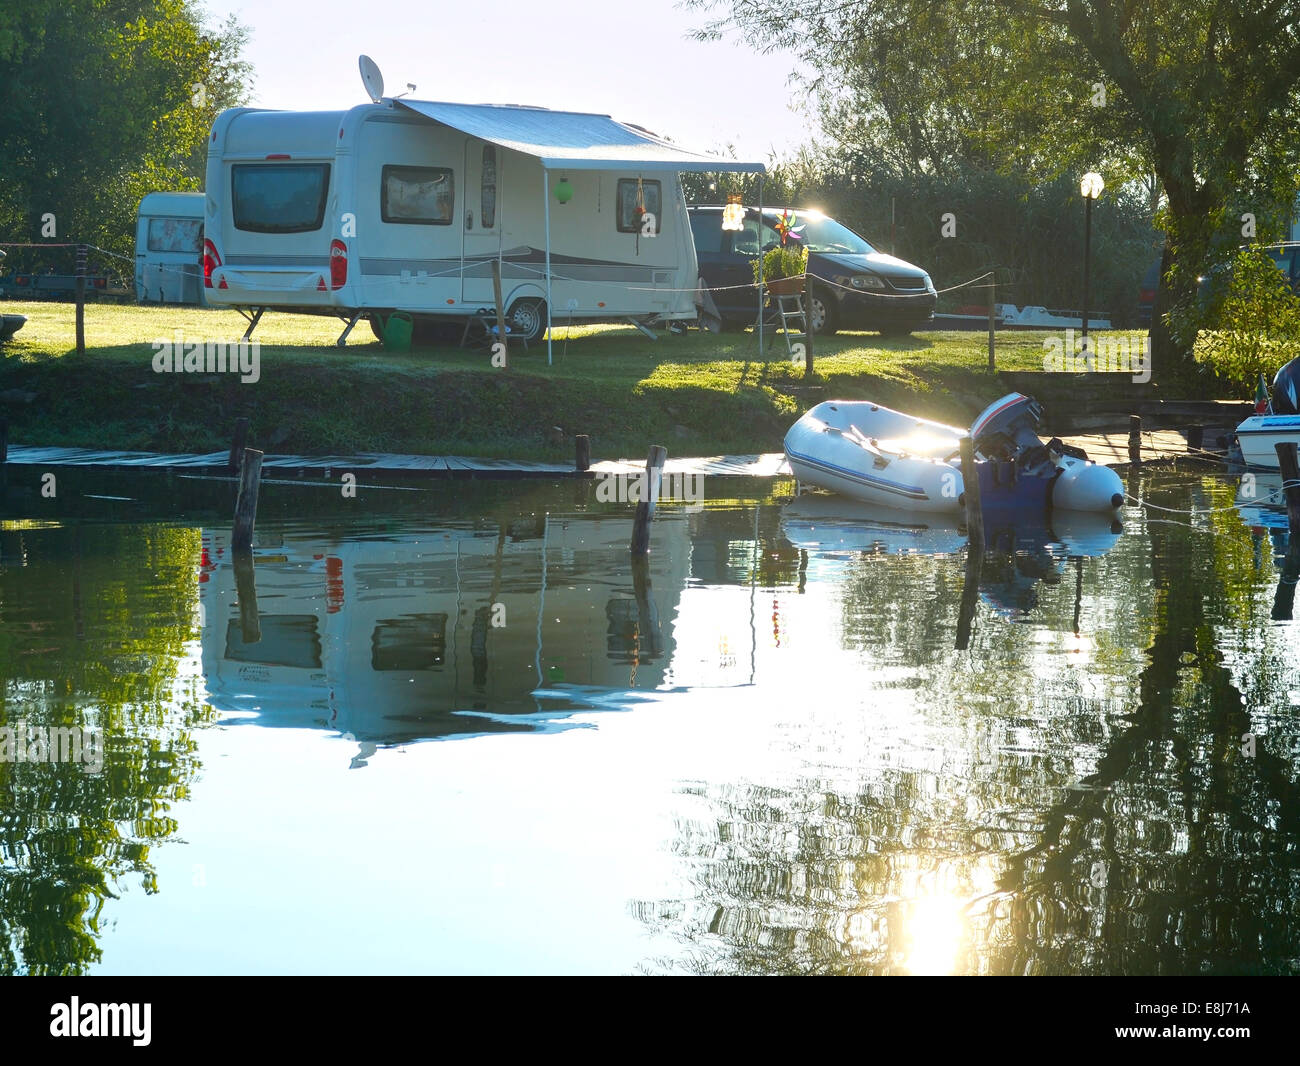 Site de camping sur un lac avec caravanes et bateaux Banque D'Images